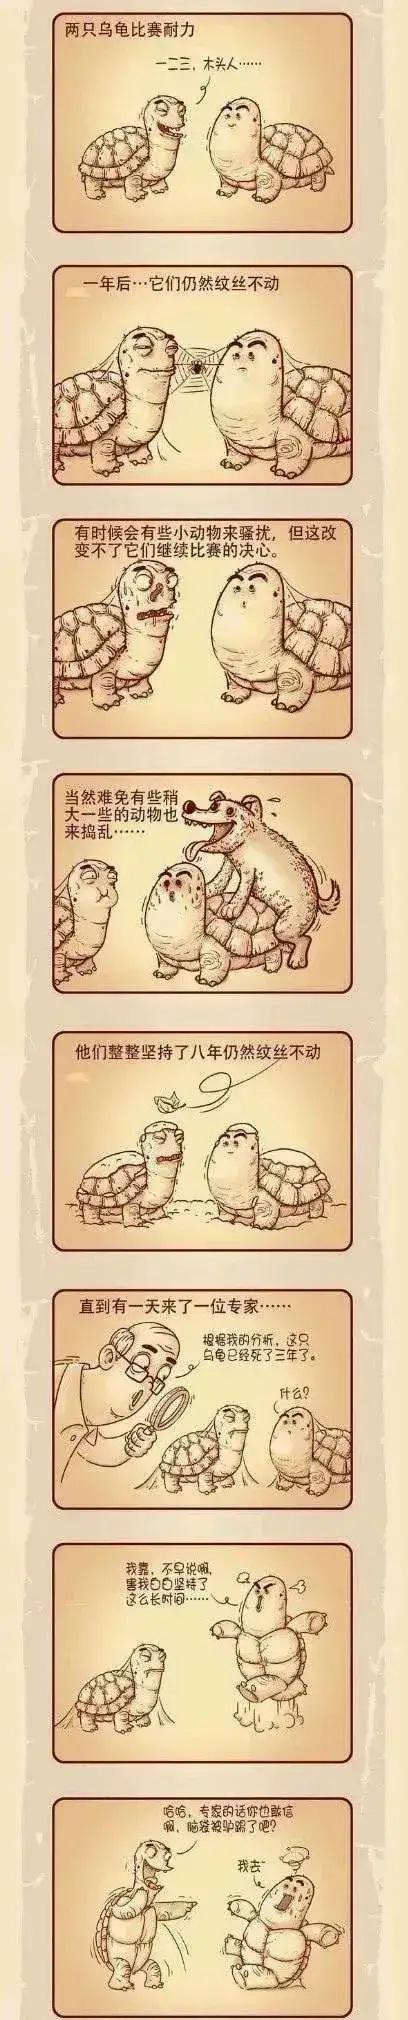 漫画小科普:两只乌龟比赛耐力,这图说明了什么?有谁明白吗?